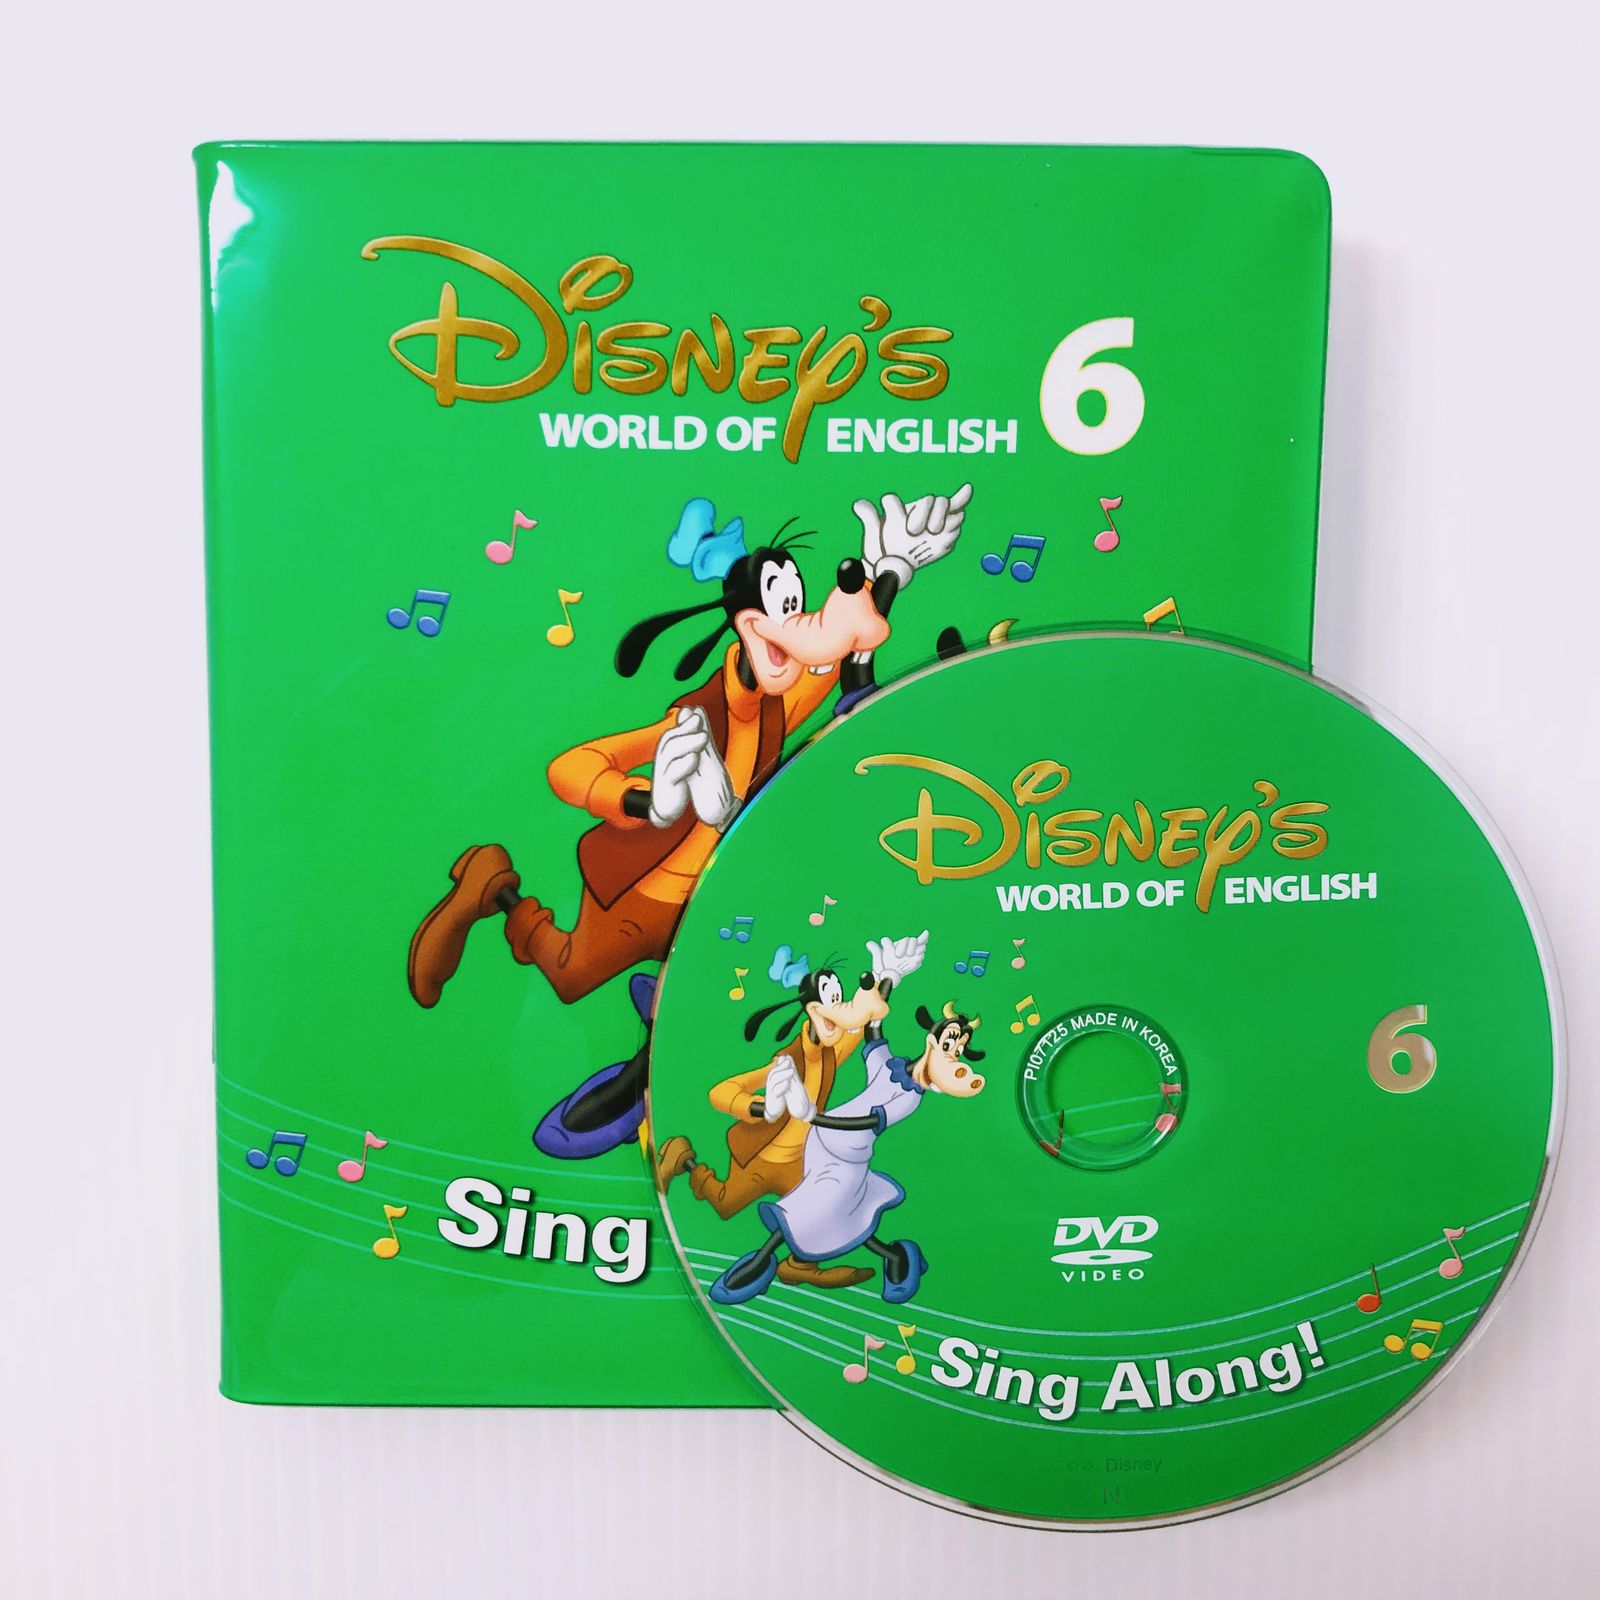 ディズニー英語システム シングアロング DVD 新子役 6巻 b-505 DWE ...